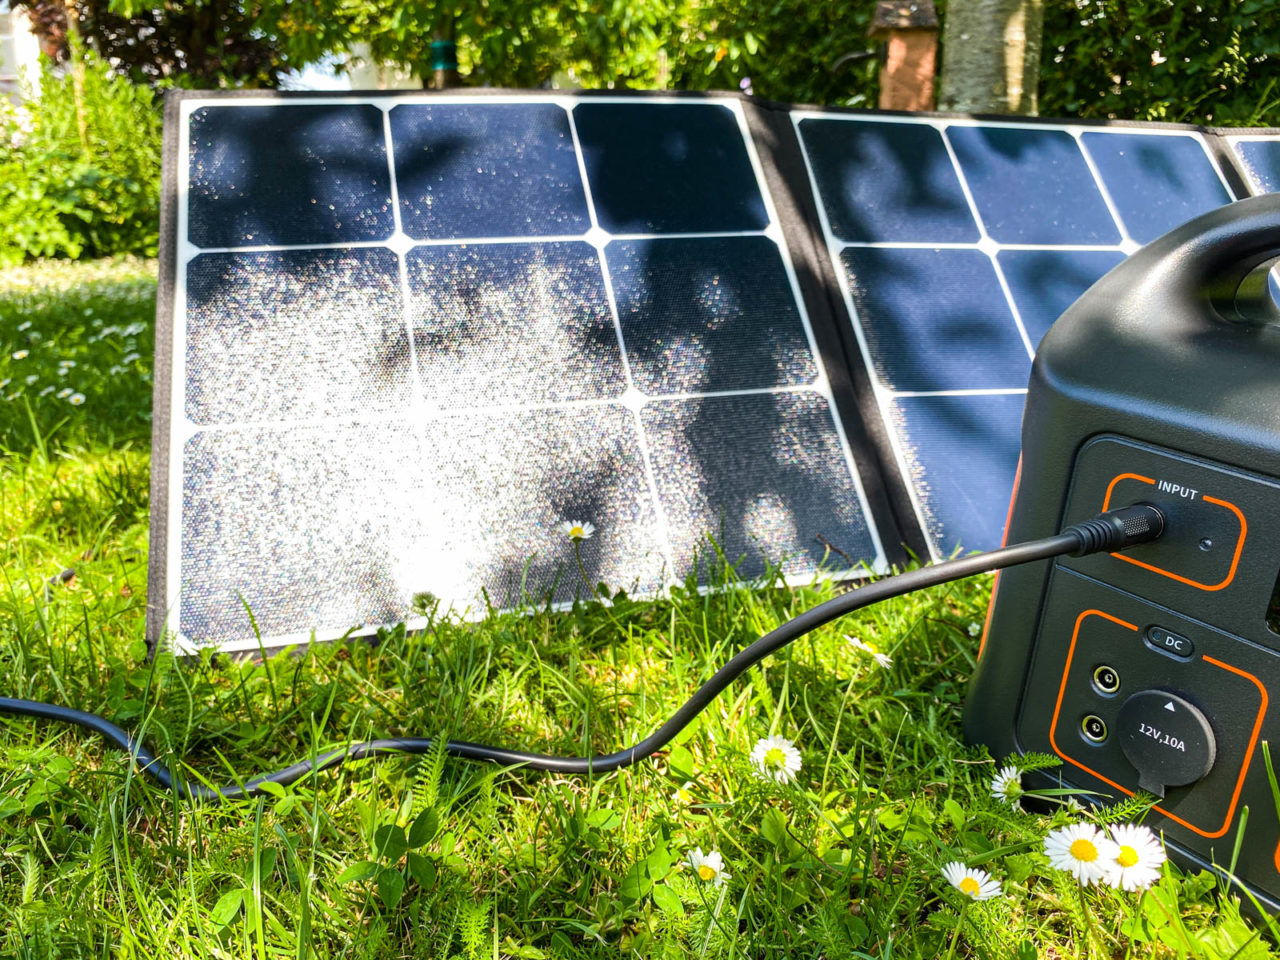 Poweroak Bluetti Sp120 Solarpanel Test Leistung Im Schatten, Solartasche An Der Power Station Unter Einem Baum